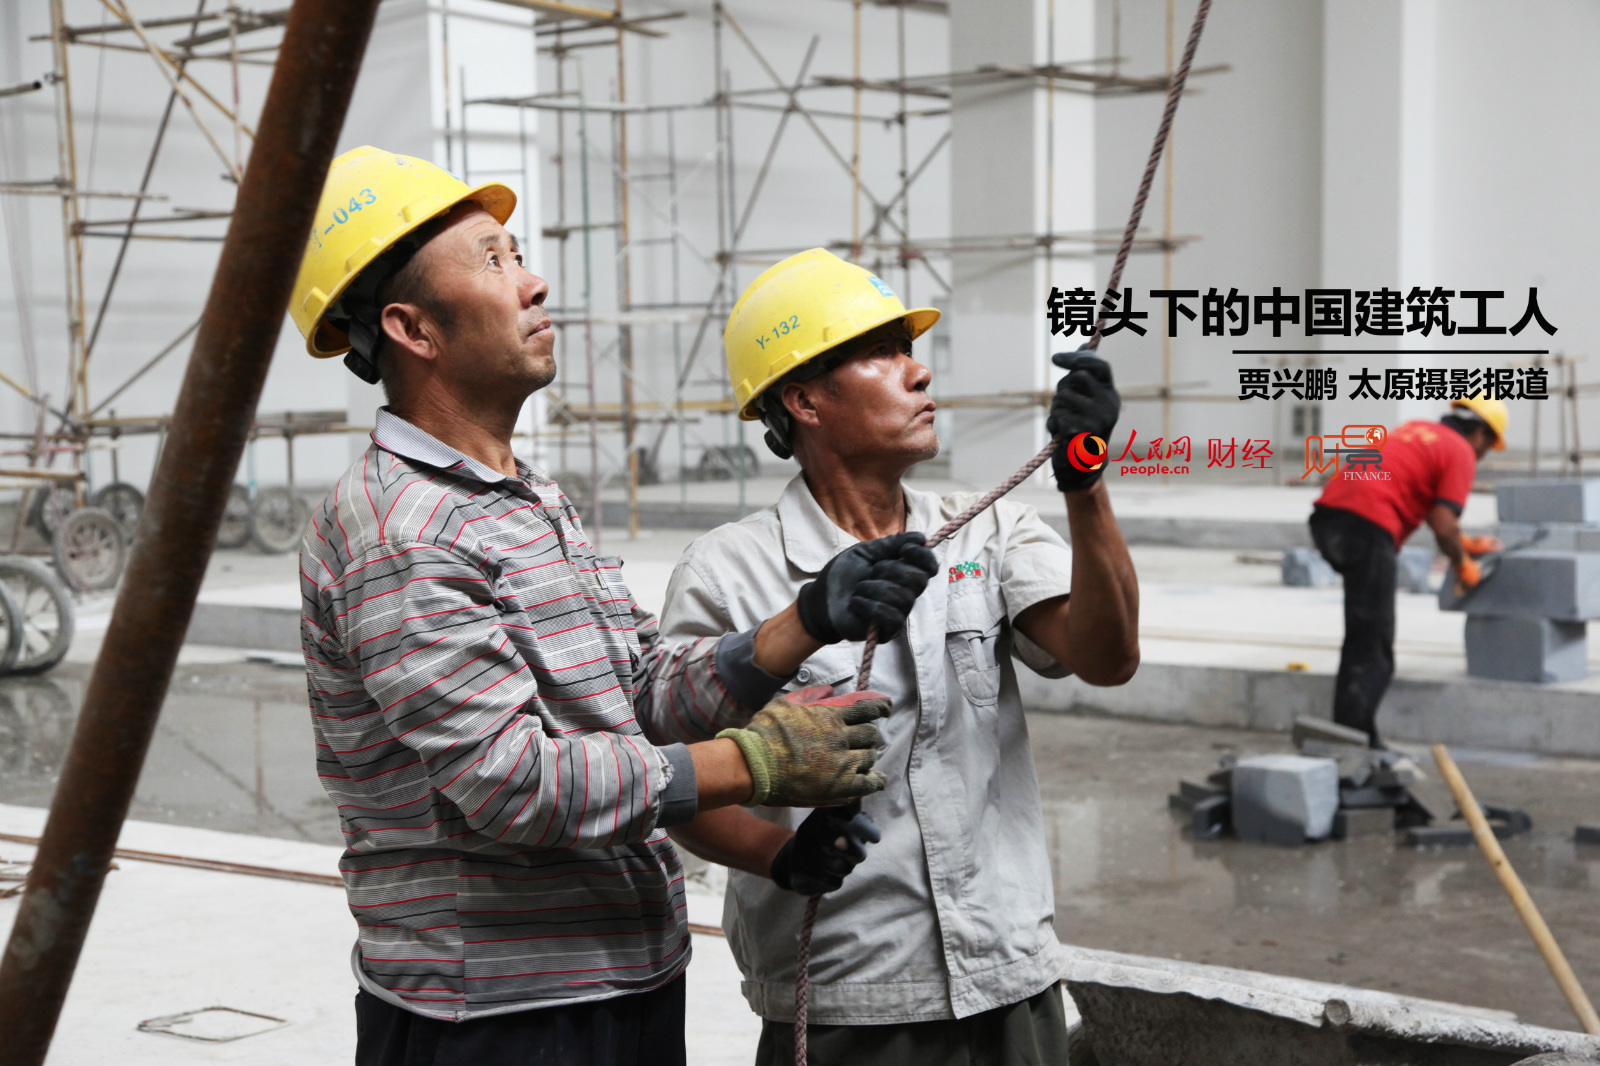 财景:镜头下的中国建筑工人小工日薪仅百元(高清)财经